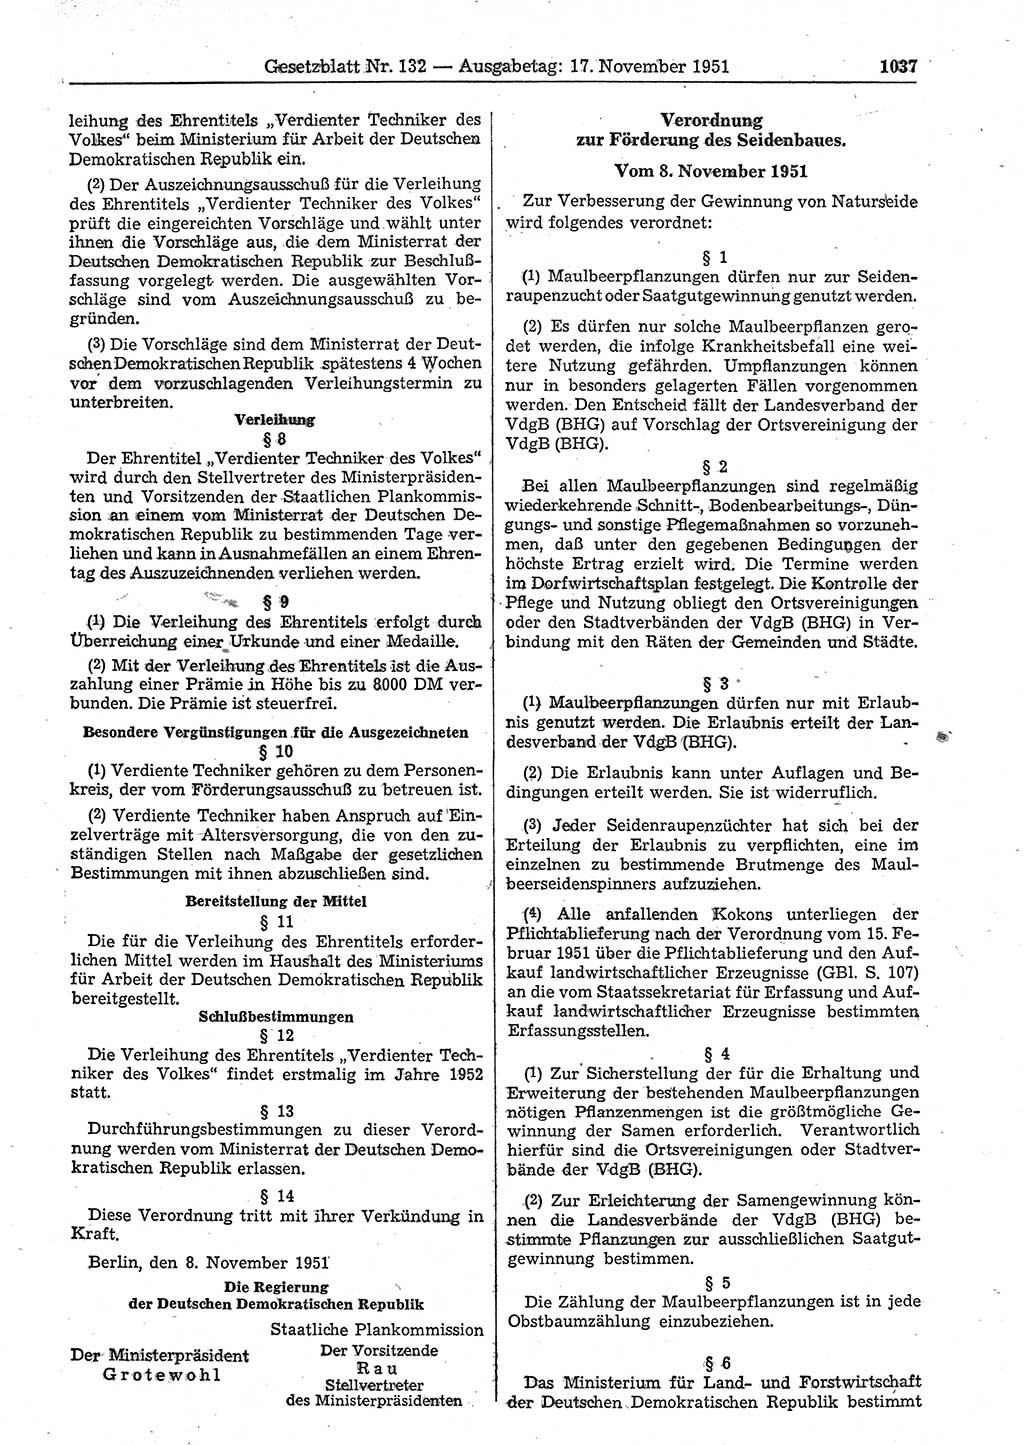 Gesetzblatt (GBl.) der Deutschen Demokratischen Republik (DDR) 1951, Seite 1037 (GBl. DDR 1951, S. 1037)